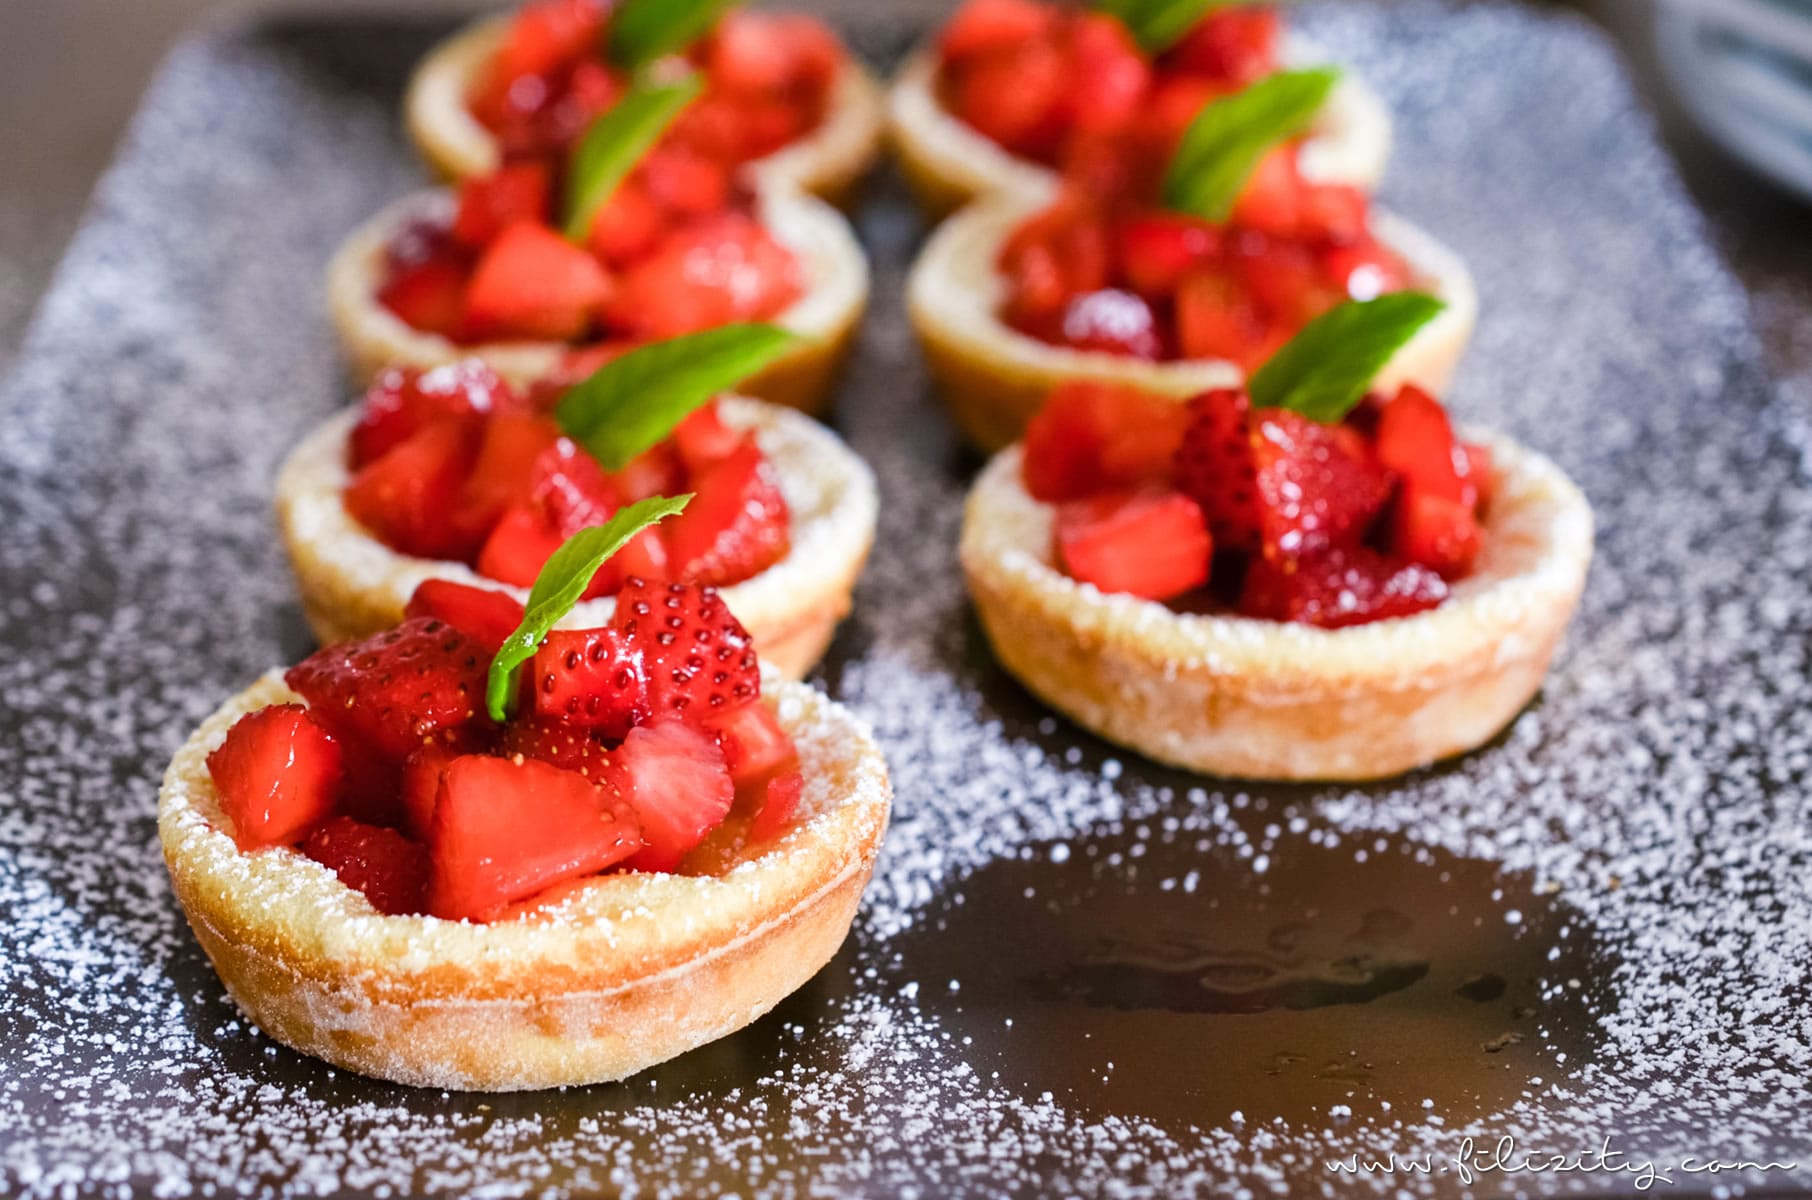 Sommer-Rezept: Pfannkuchen-Körbchen mit Erdbeeren oder anderem frischen Obst #pfannkuchen #erdbeeren